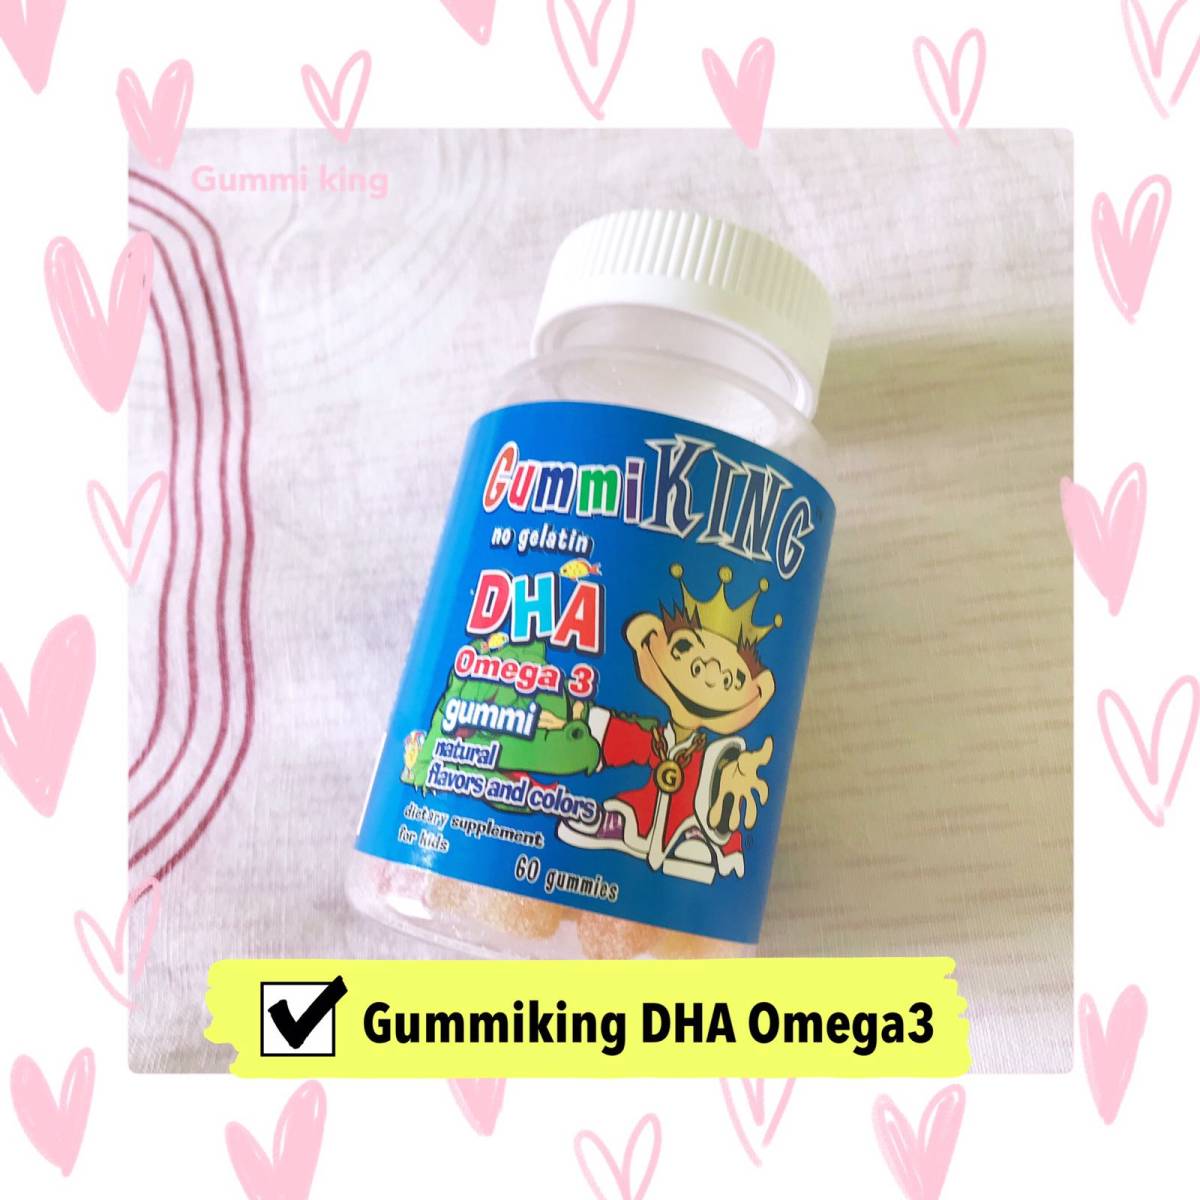 帮助宝宝补充DHA的Gummiking DHA Omega3